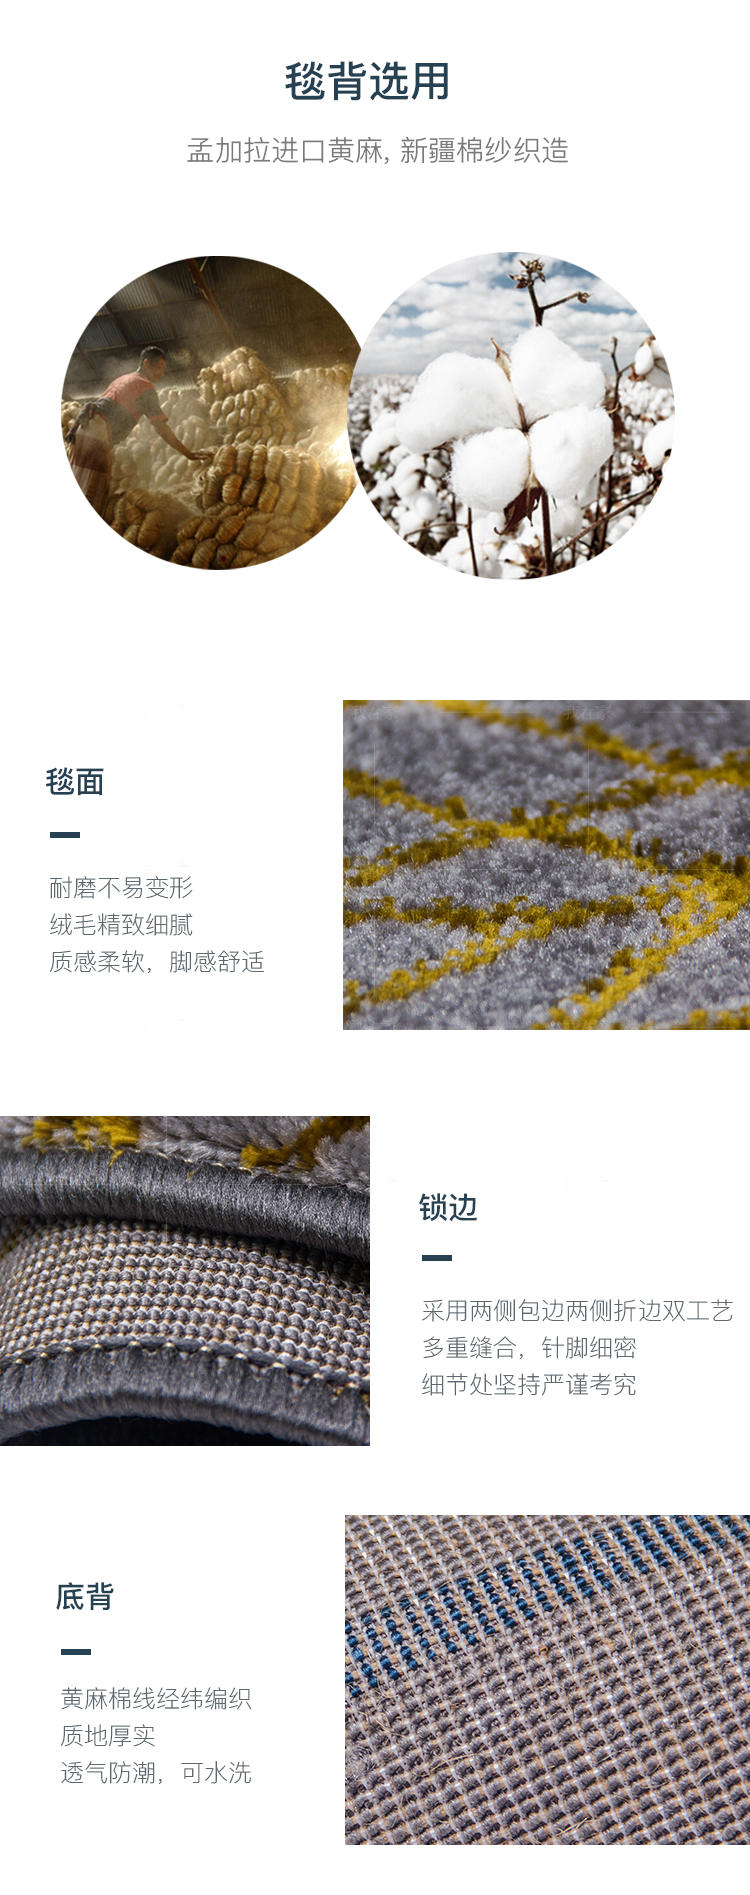 地毯系列抽象线条机织地毯的详细介绍